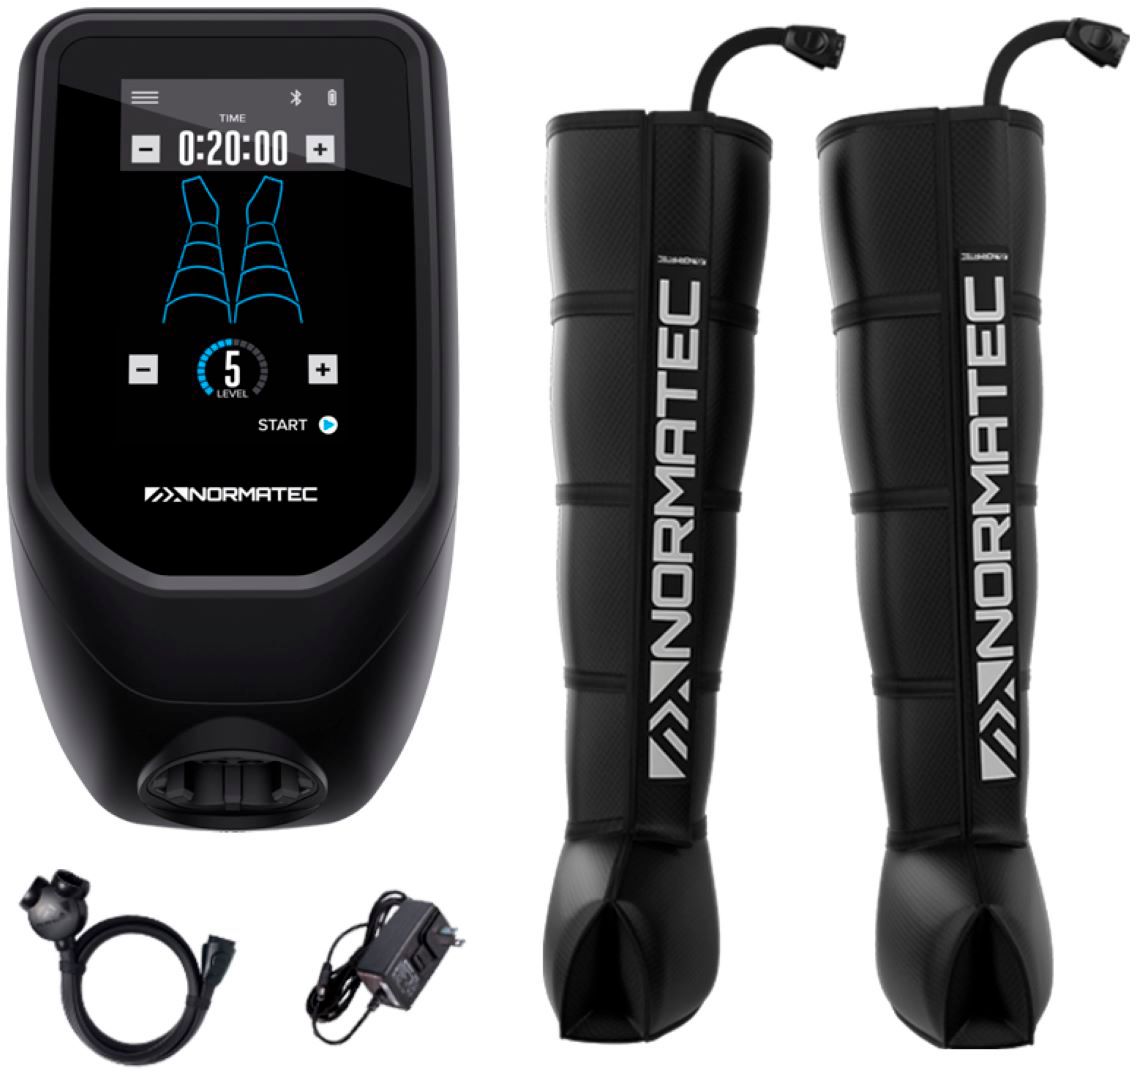 markt formaat Worstelen Hyperice Normatec 2.0 Pro Leg Recovery System Black 60030 001-03 - Best Buy